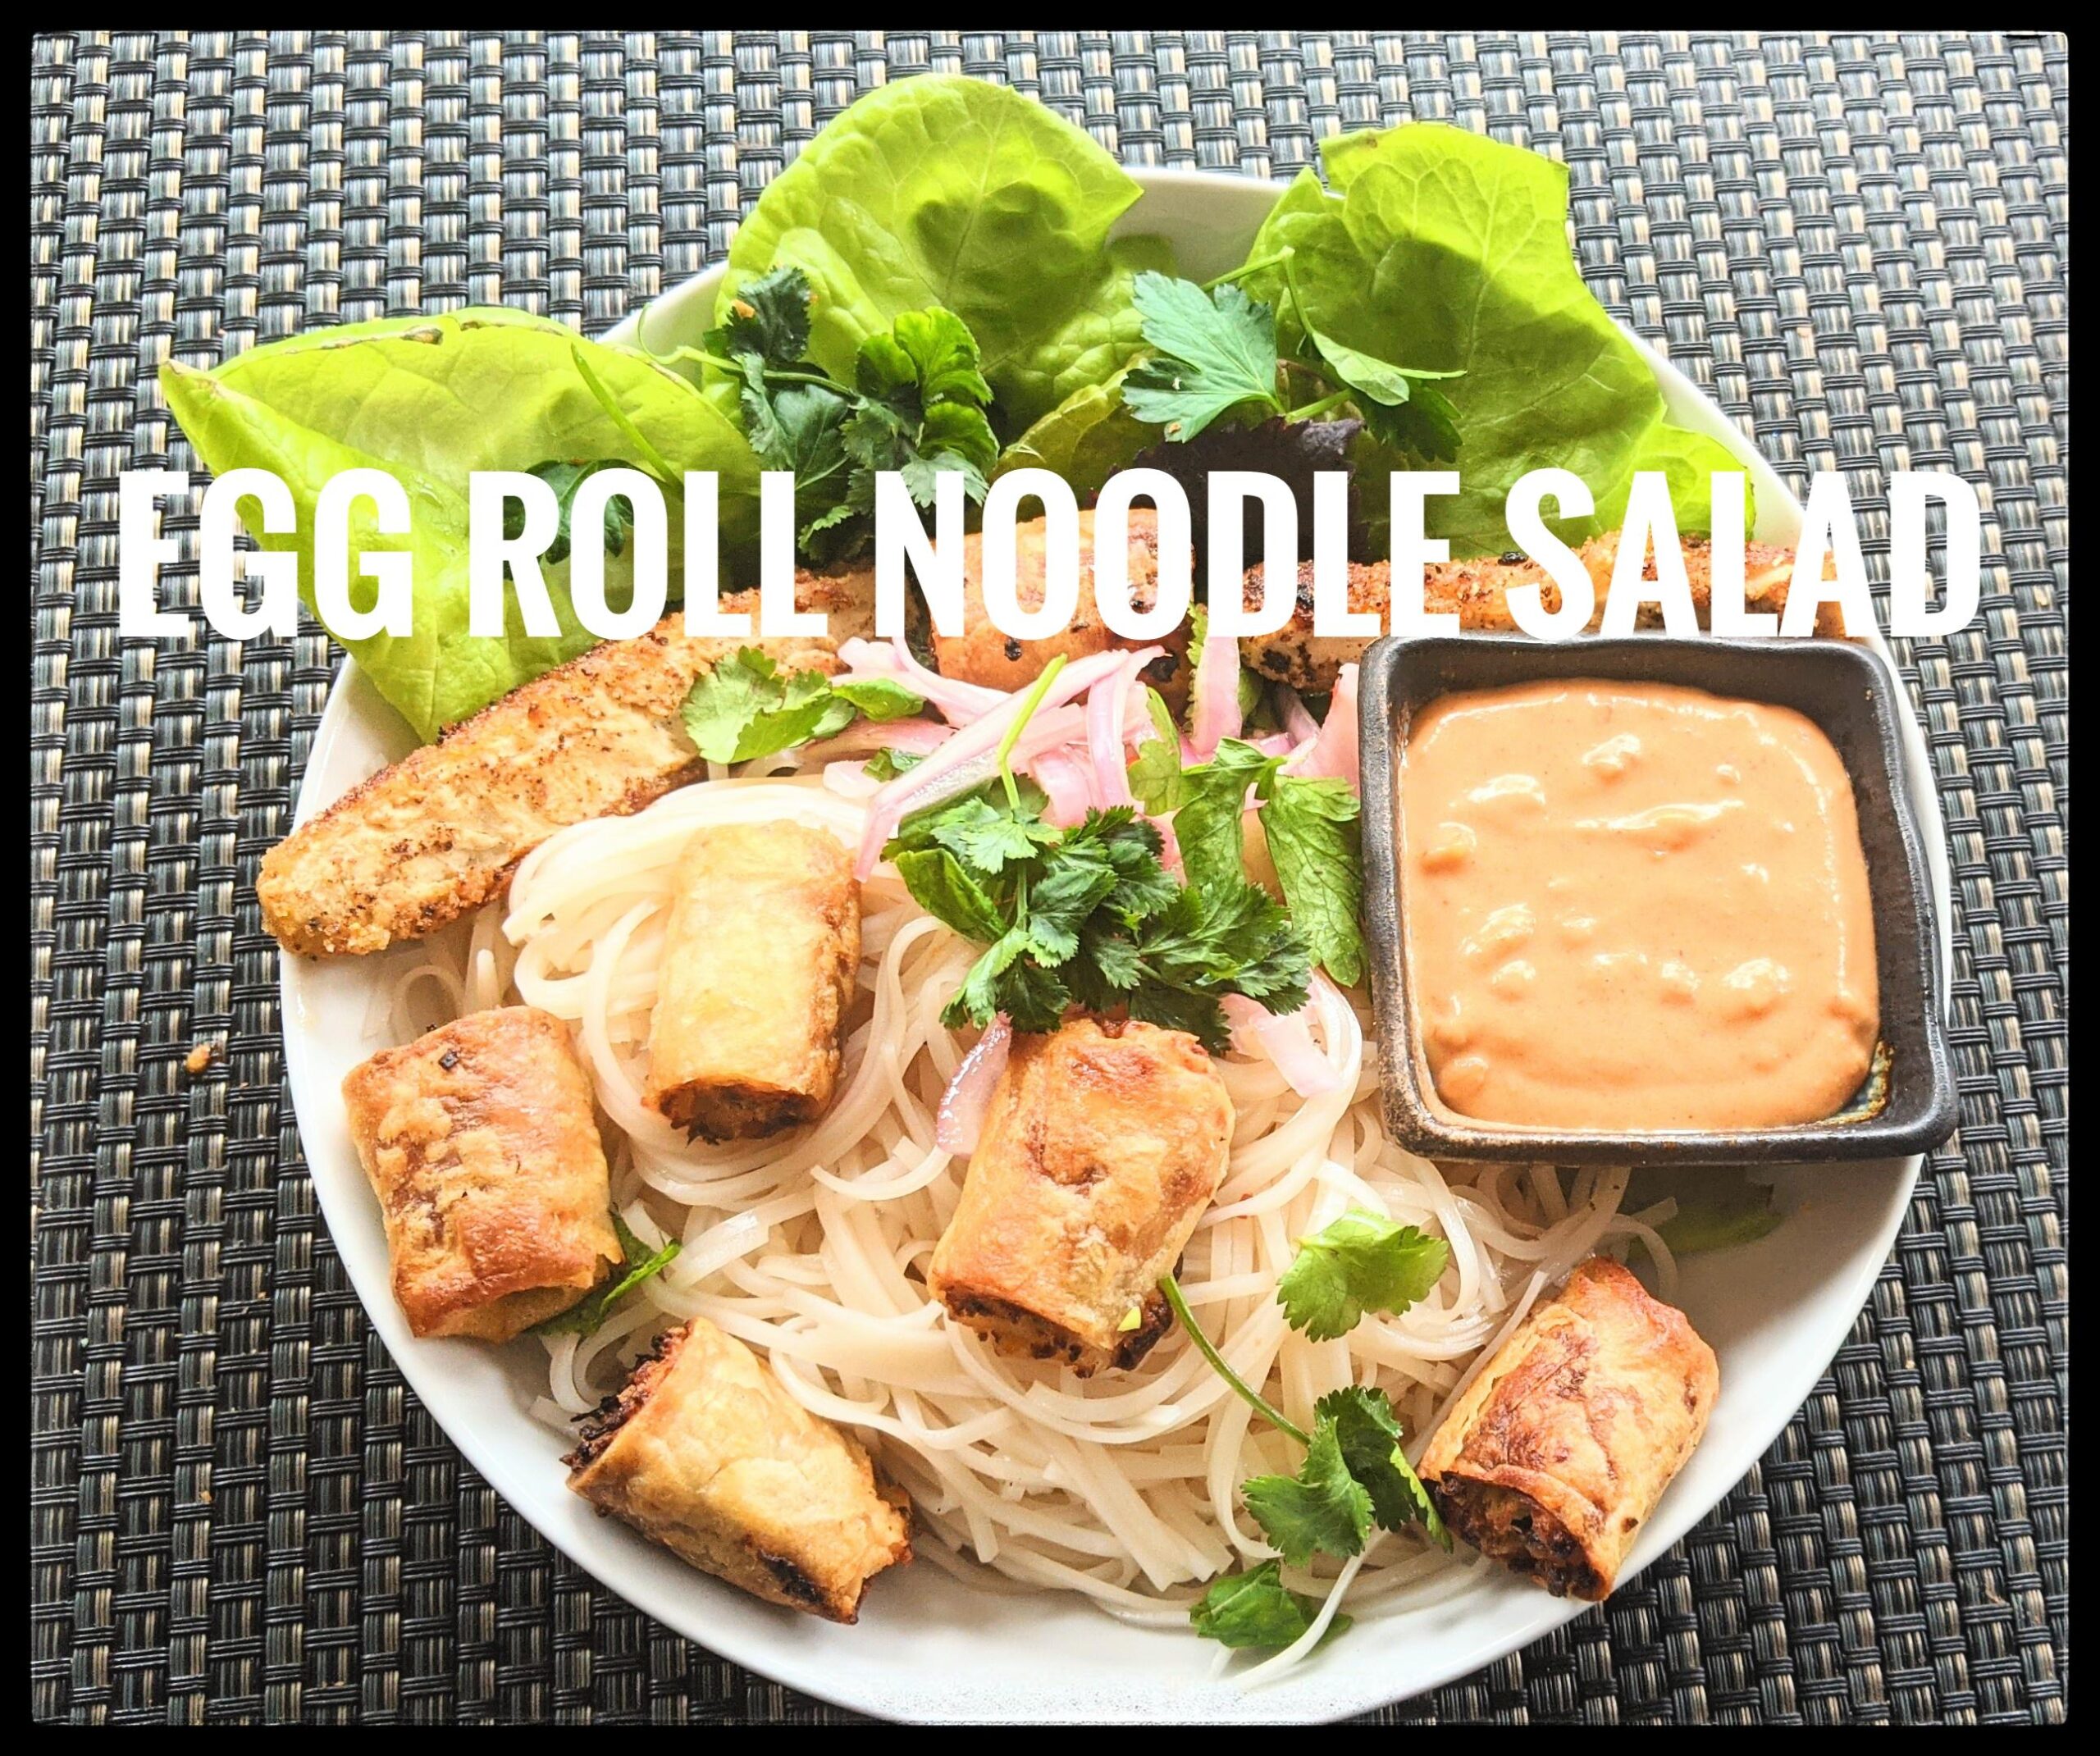 Egg Roll Noodle salad